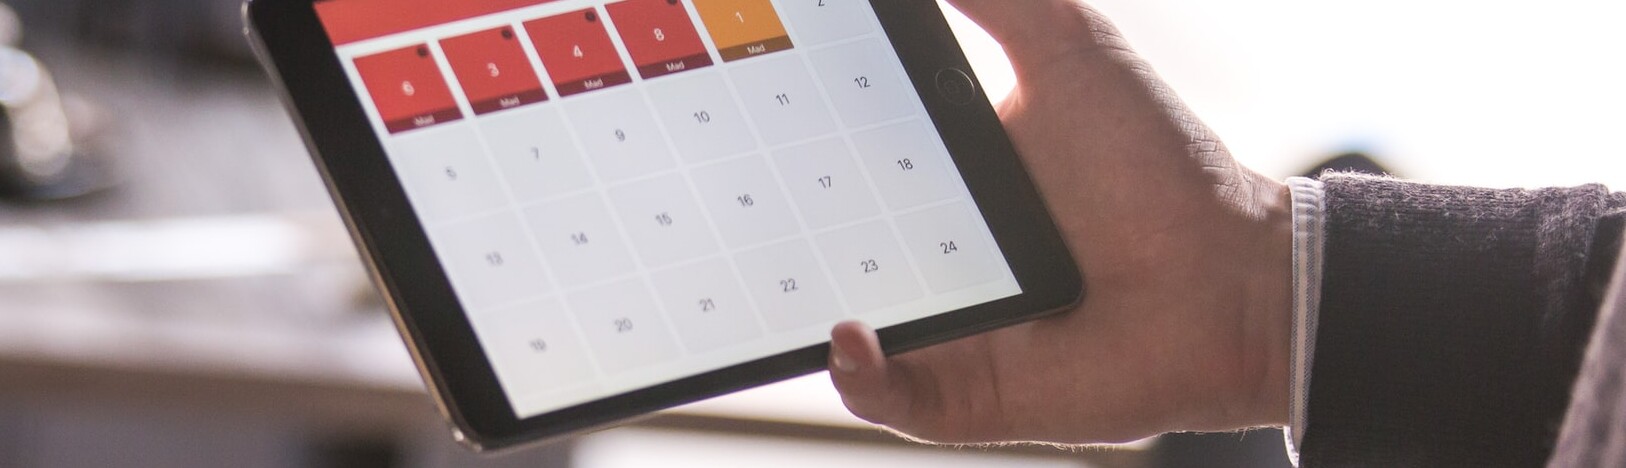 mão segurando um tablet que mostra calendário de datas religiosas